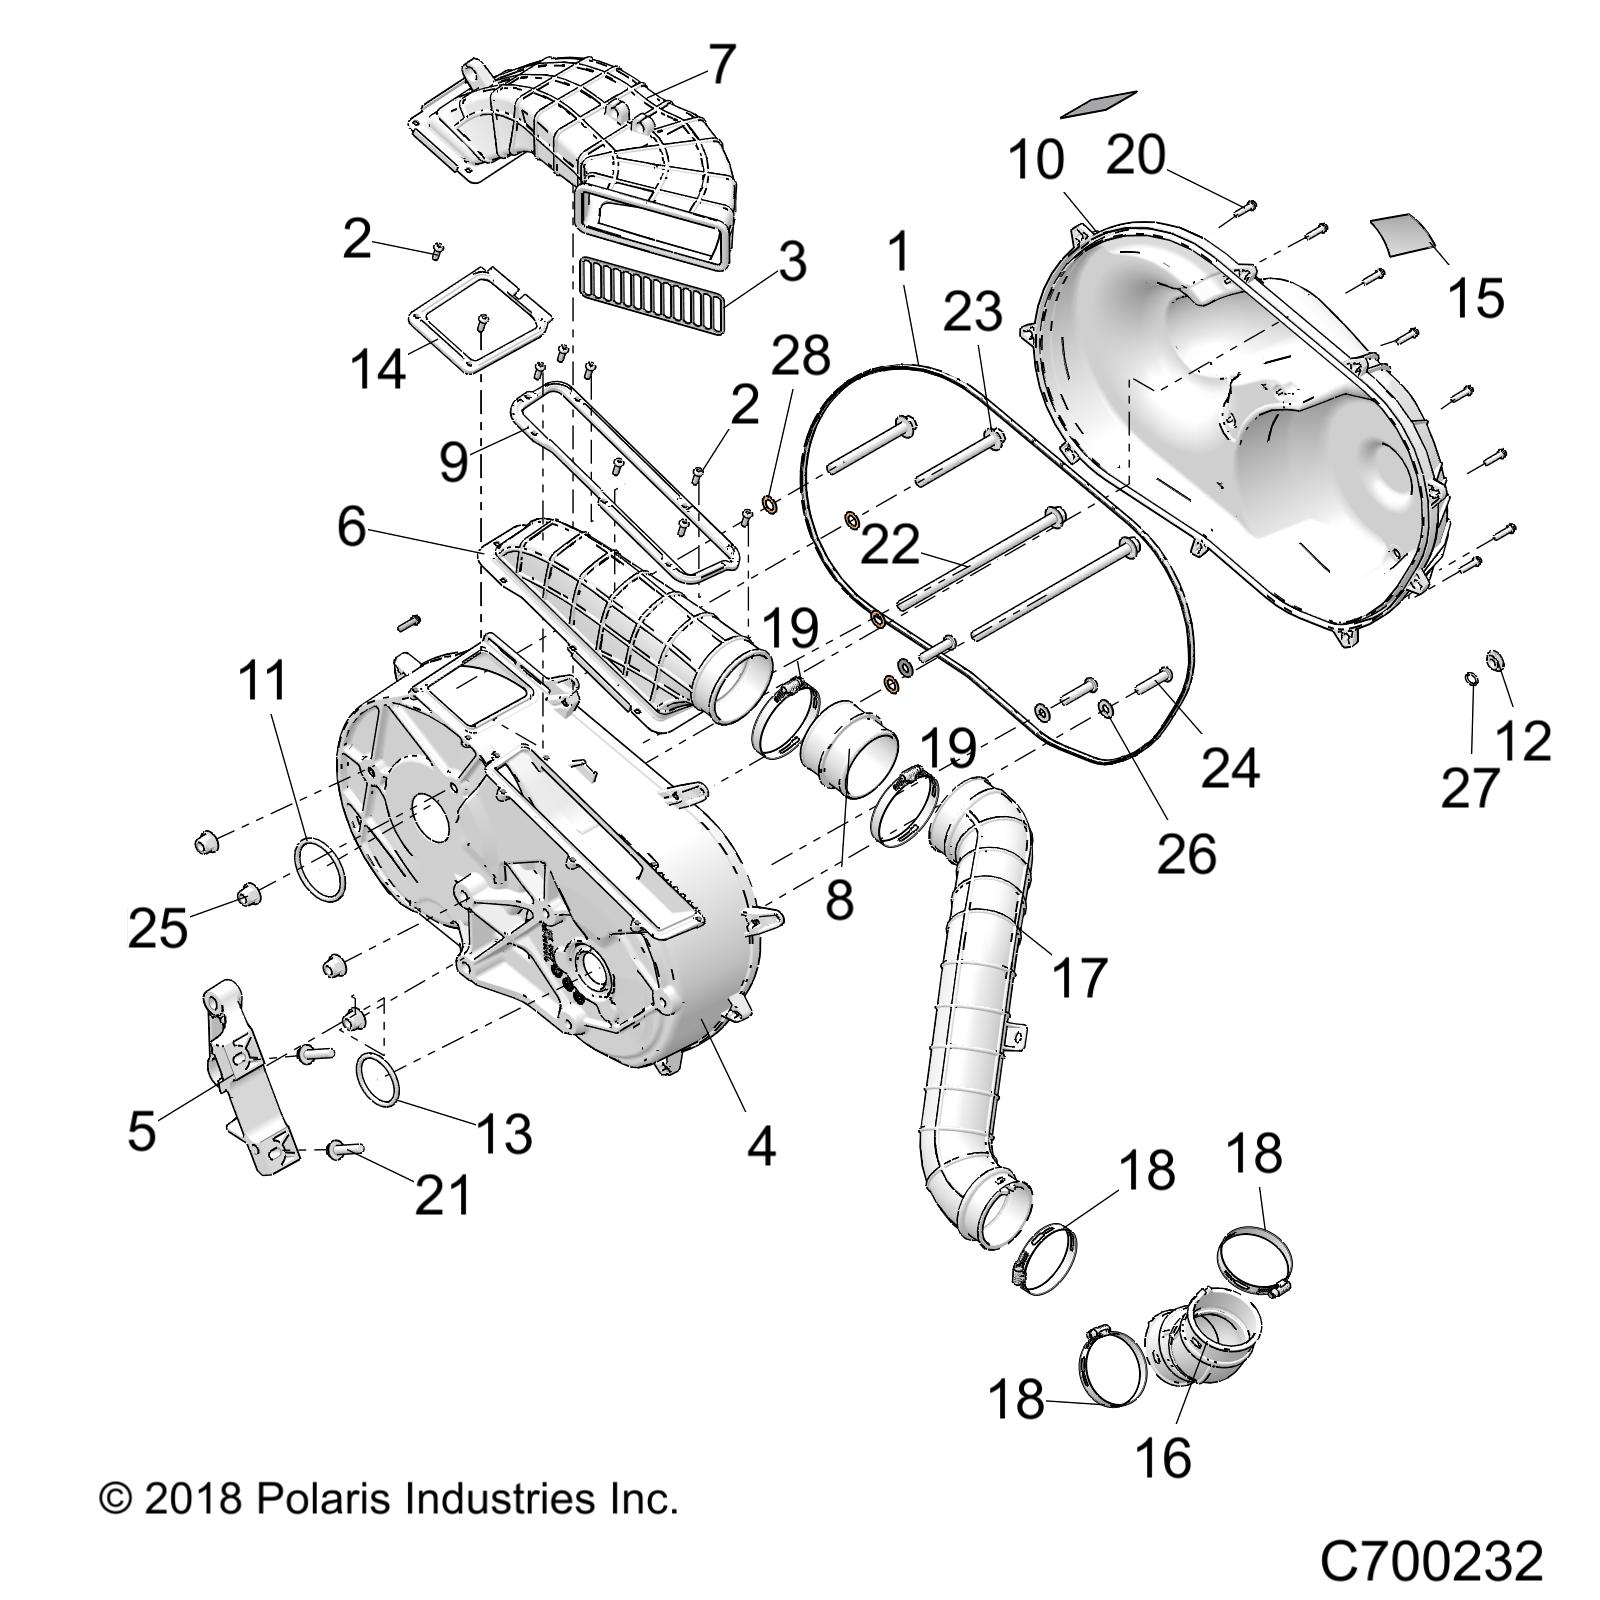 Foto diagrama Polaris que contem a peça 5416207